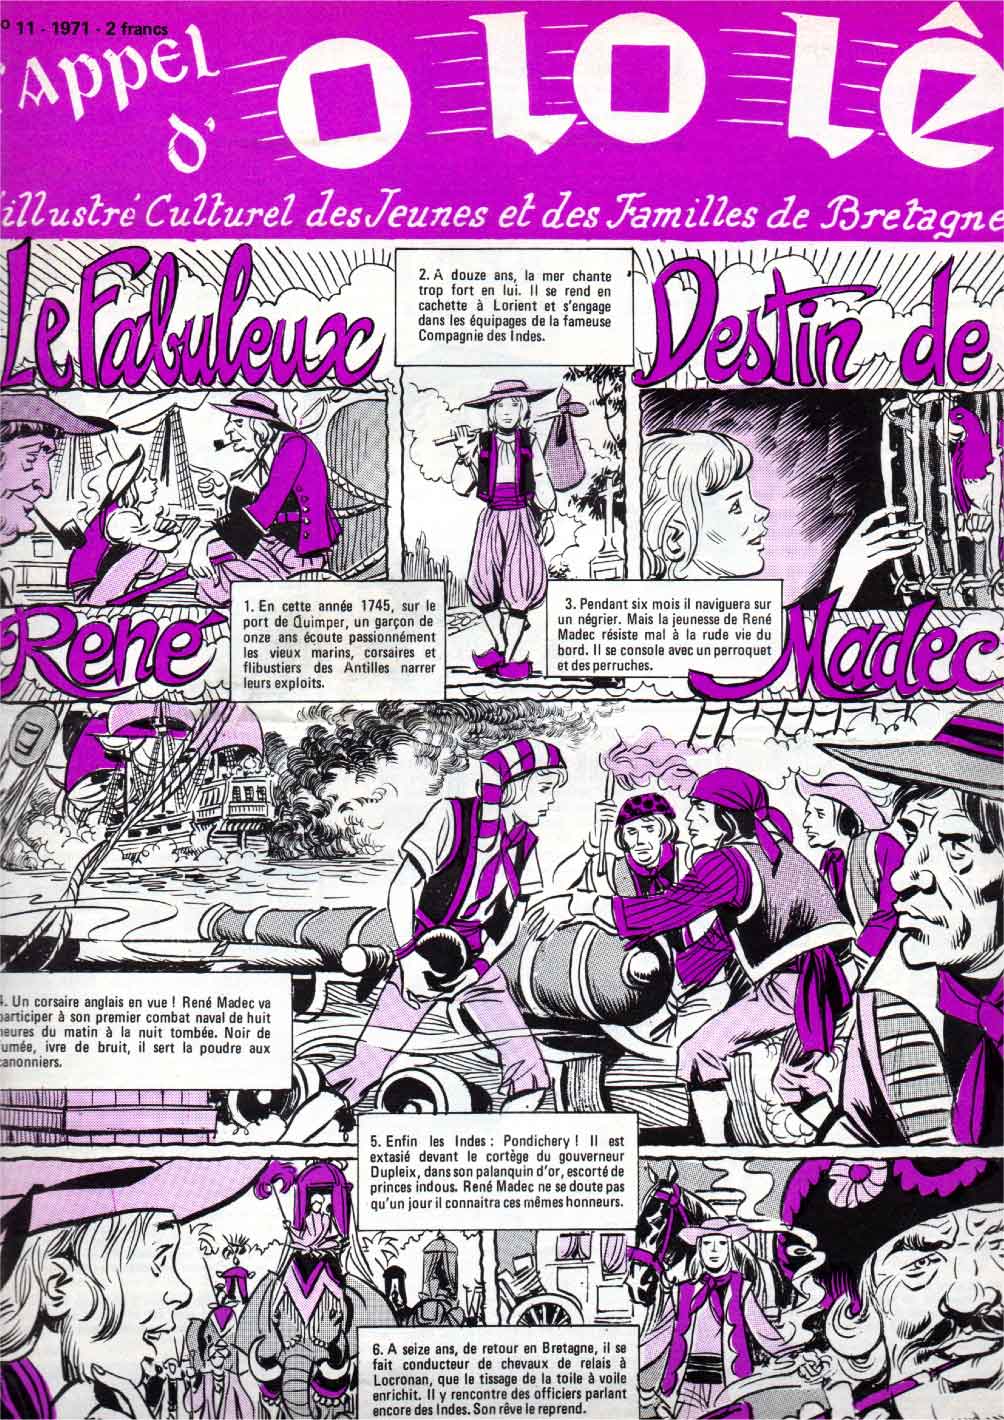 « Le Fabuleux Destin de René Madec » L’Appel d’O Lo Lê n° 11 (1971).